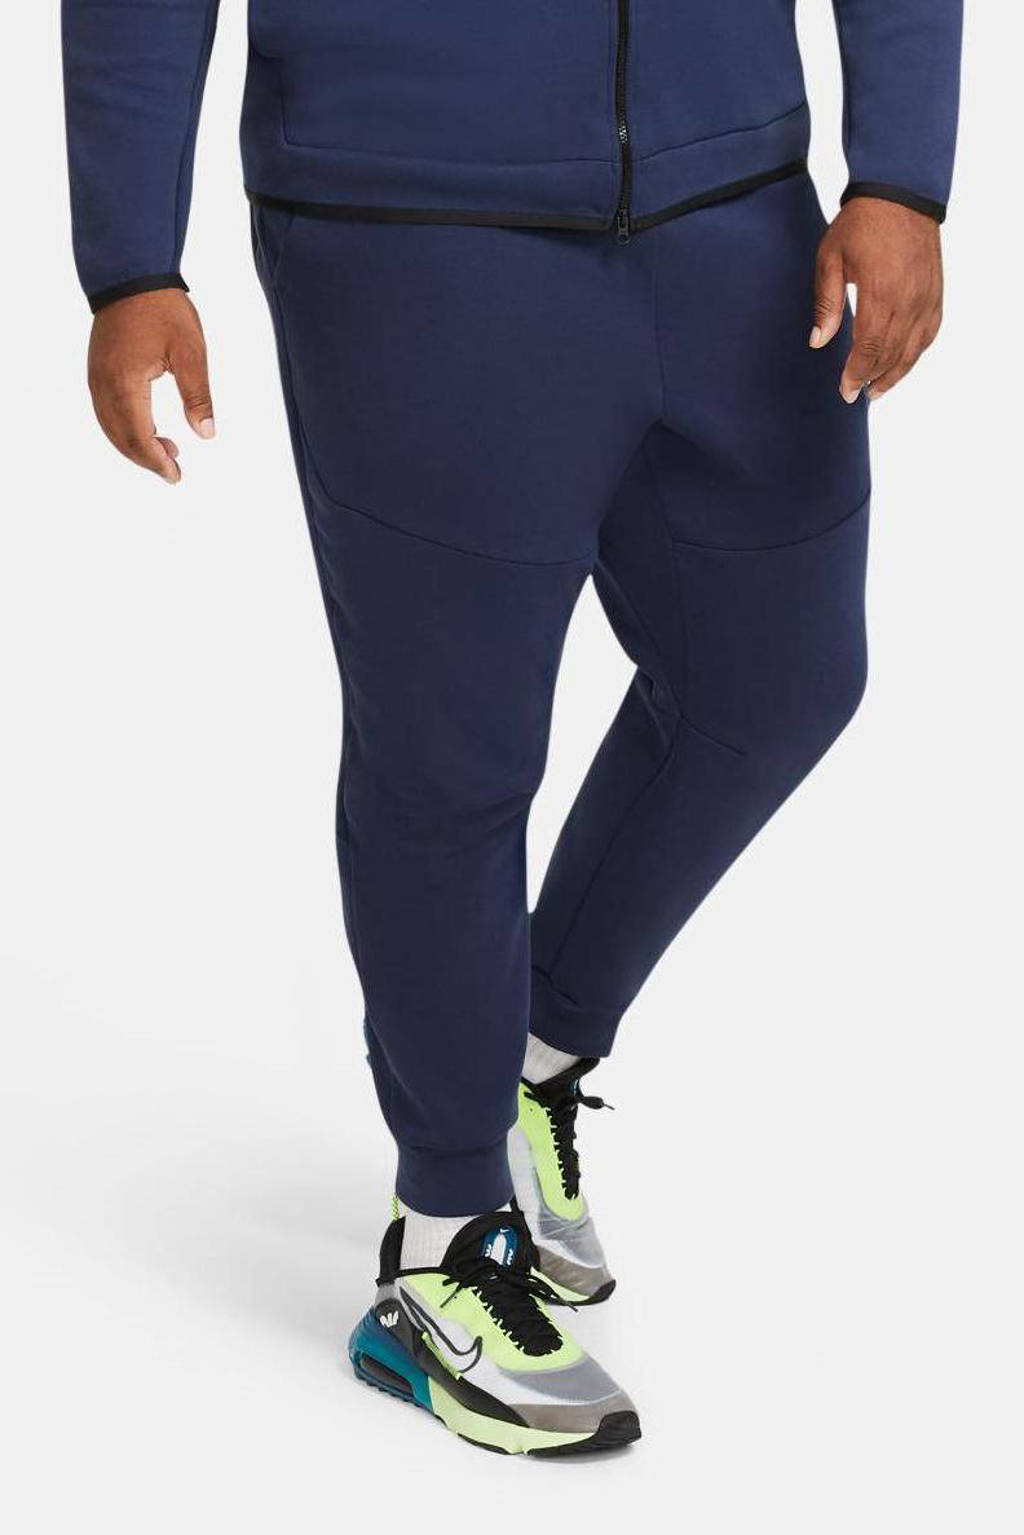 Herrie Dij Verbonden Nike Tech Fleece joggingbroek donkerblauw/zwart | wehkamp